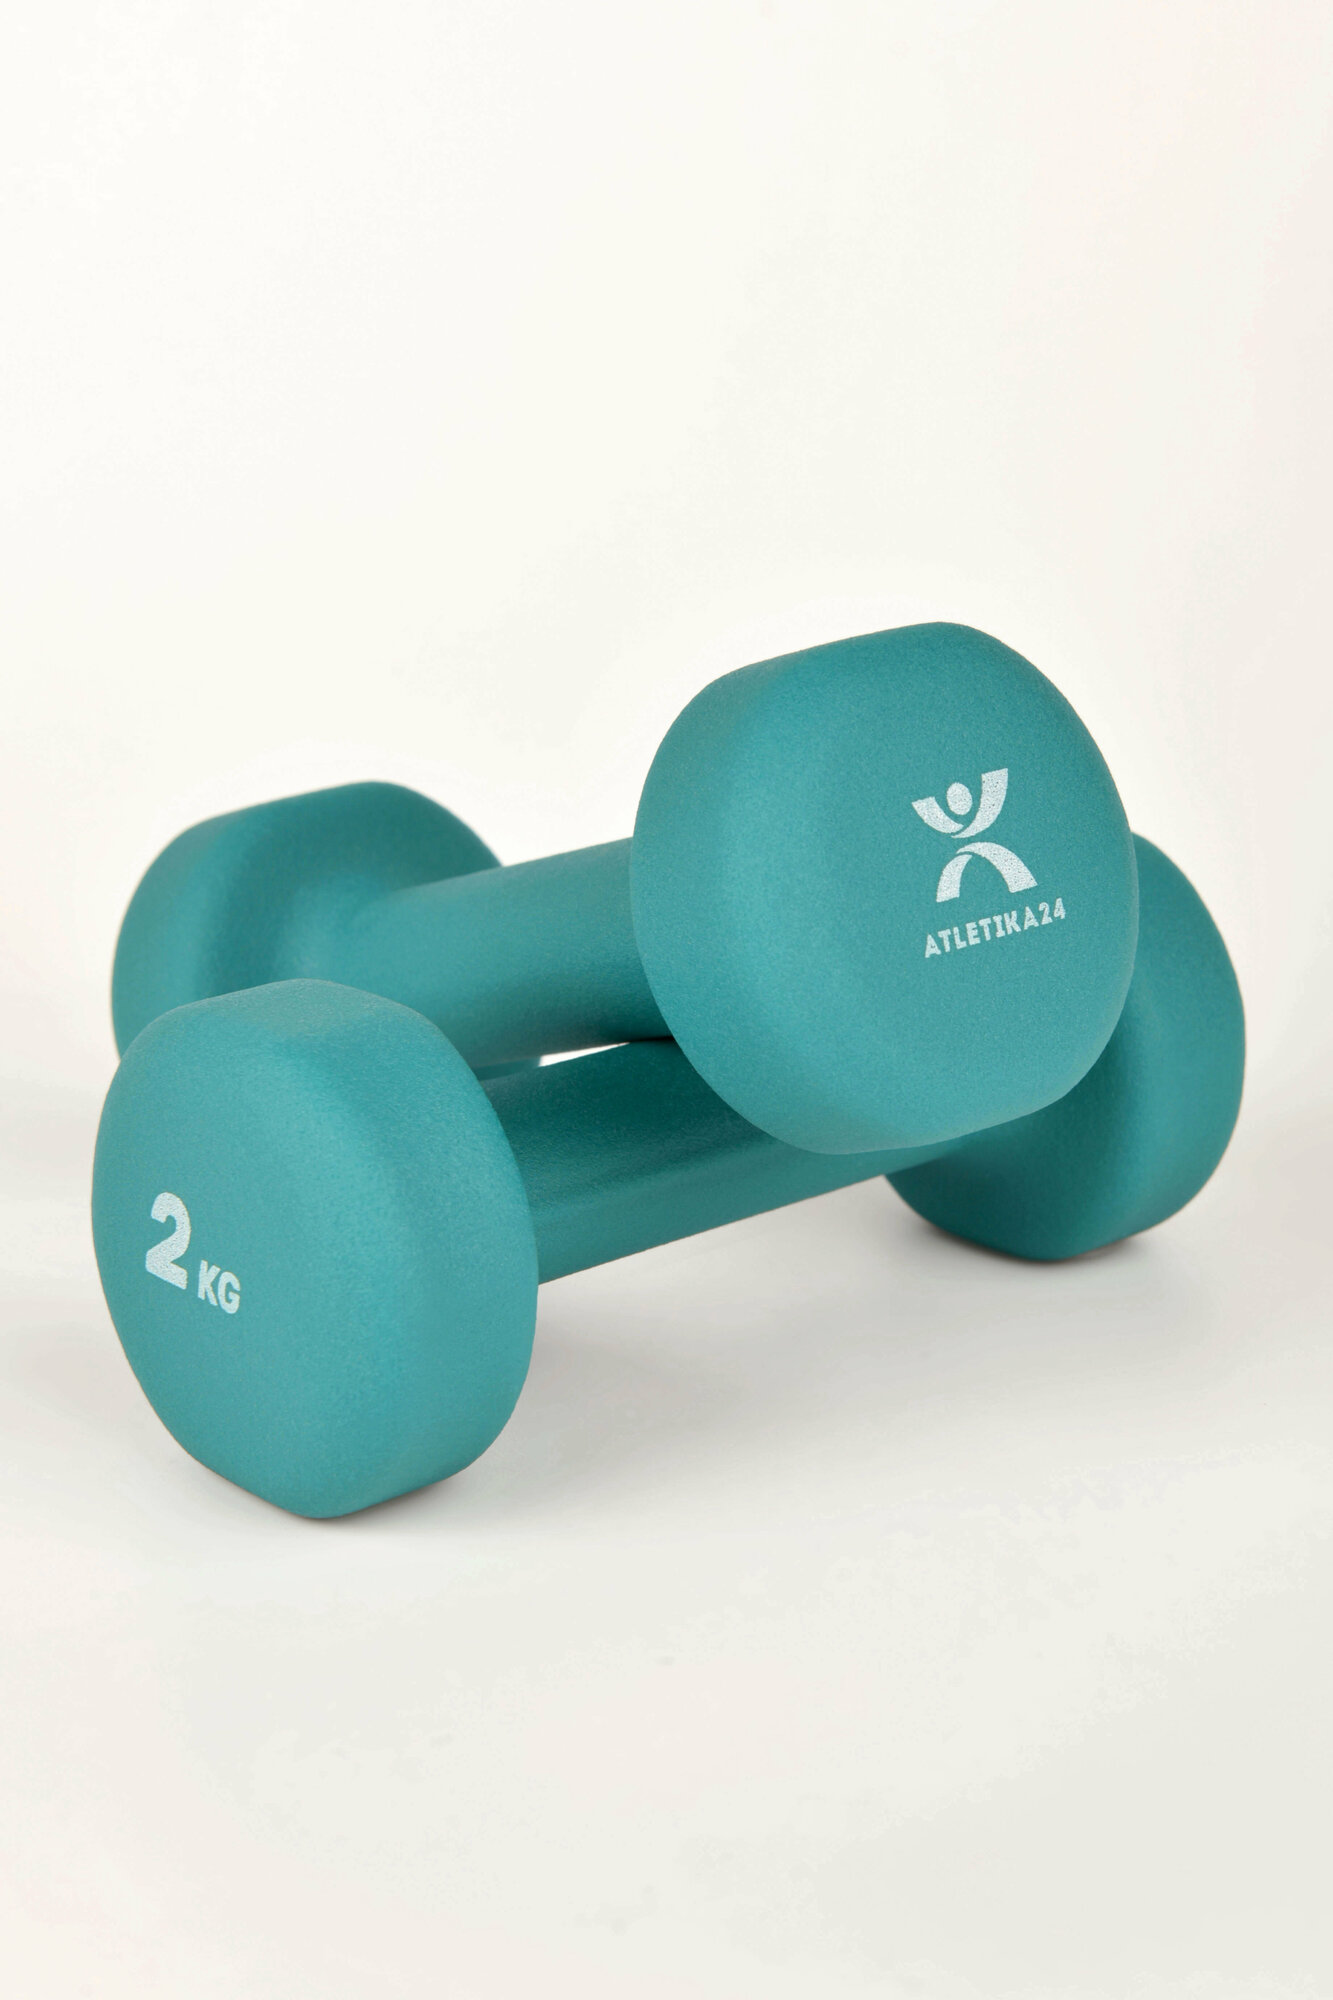 Гантели для фитнеса и спорта Atletika24 , набор неопреновых стальных гантелей для дома, спортзала, 2 шт по 2 кг